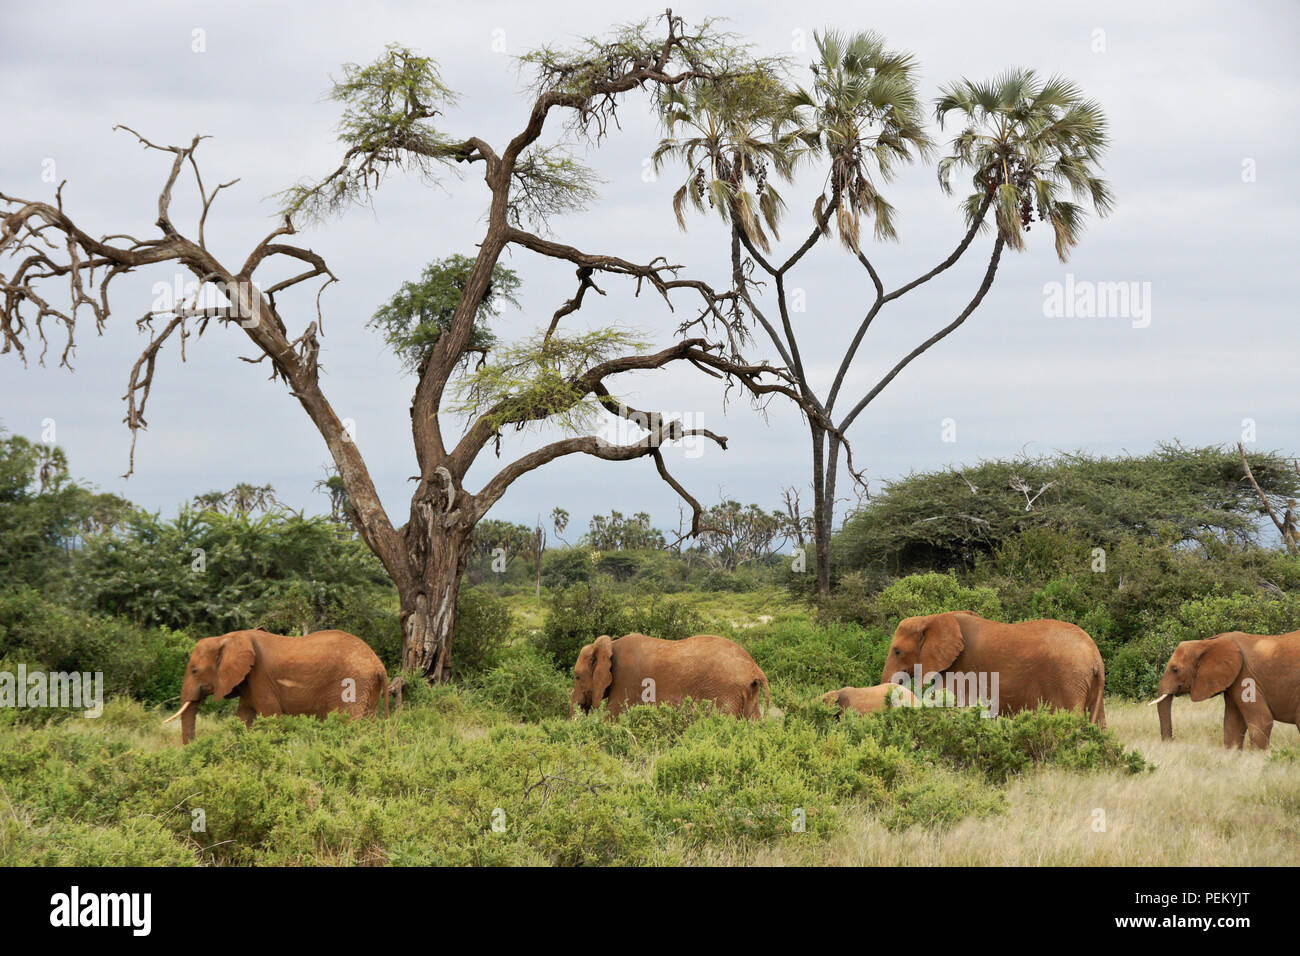 Elefanten füttern im Busch vor dem Hintergrund der Akazien und doum Palmen, Samburu Game Reserve, Kenia Stockfoto